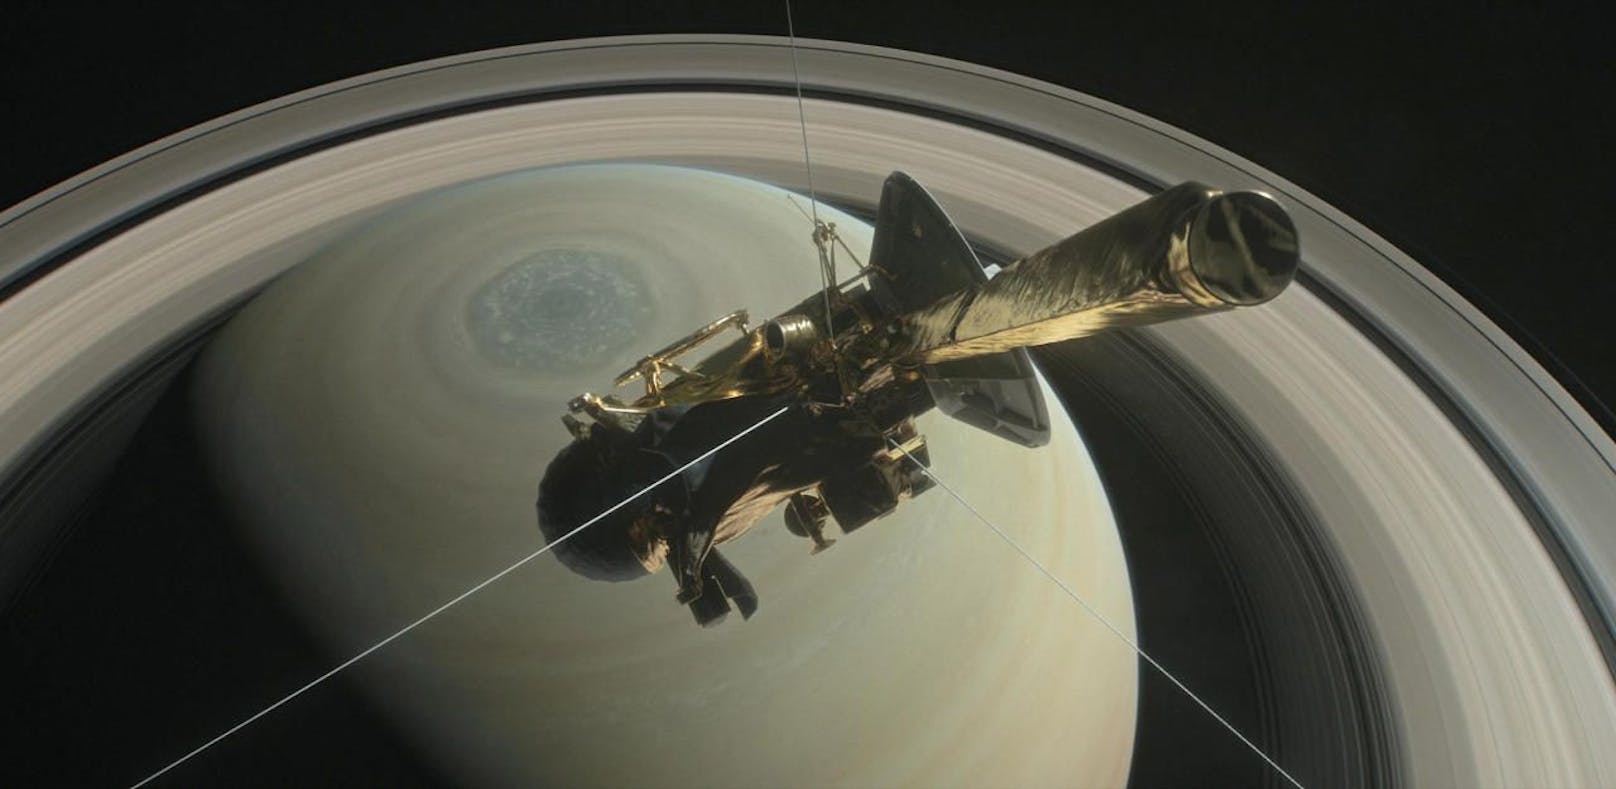 Feuerbestattung für die Sonde Cassini am Saturn